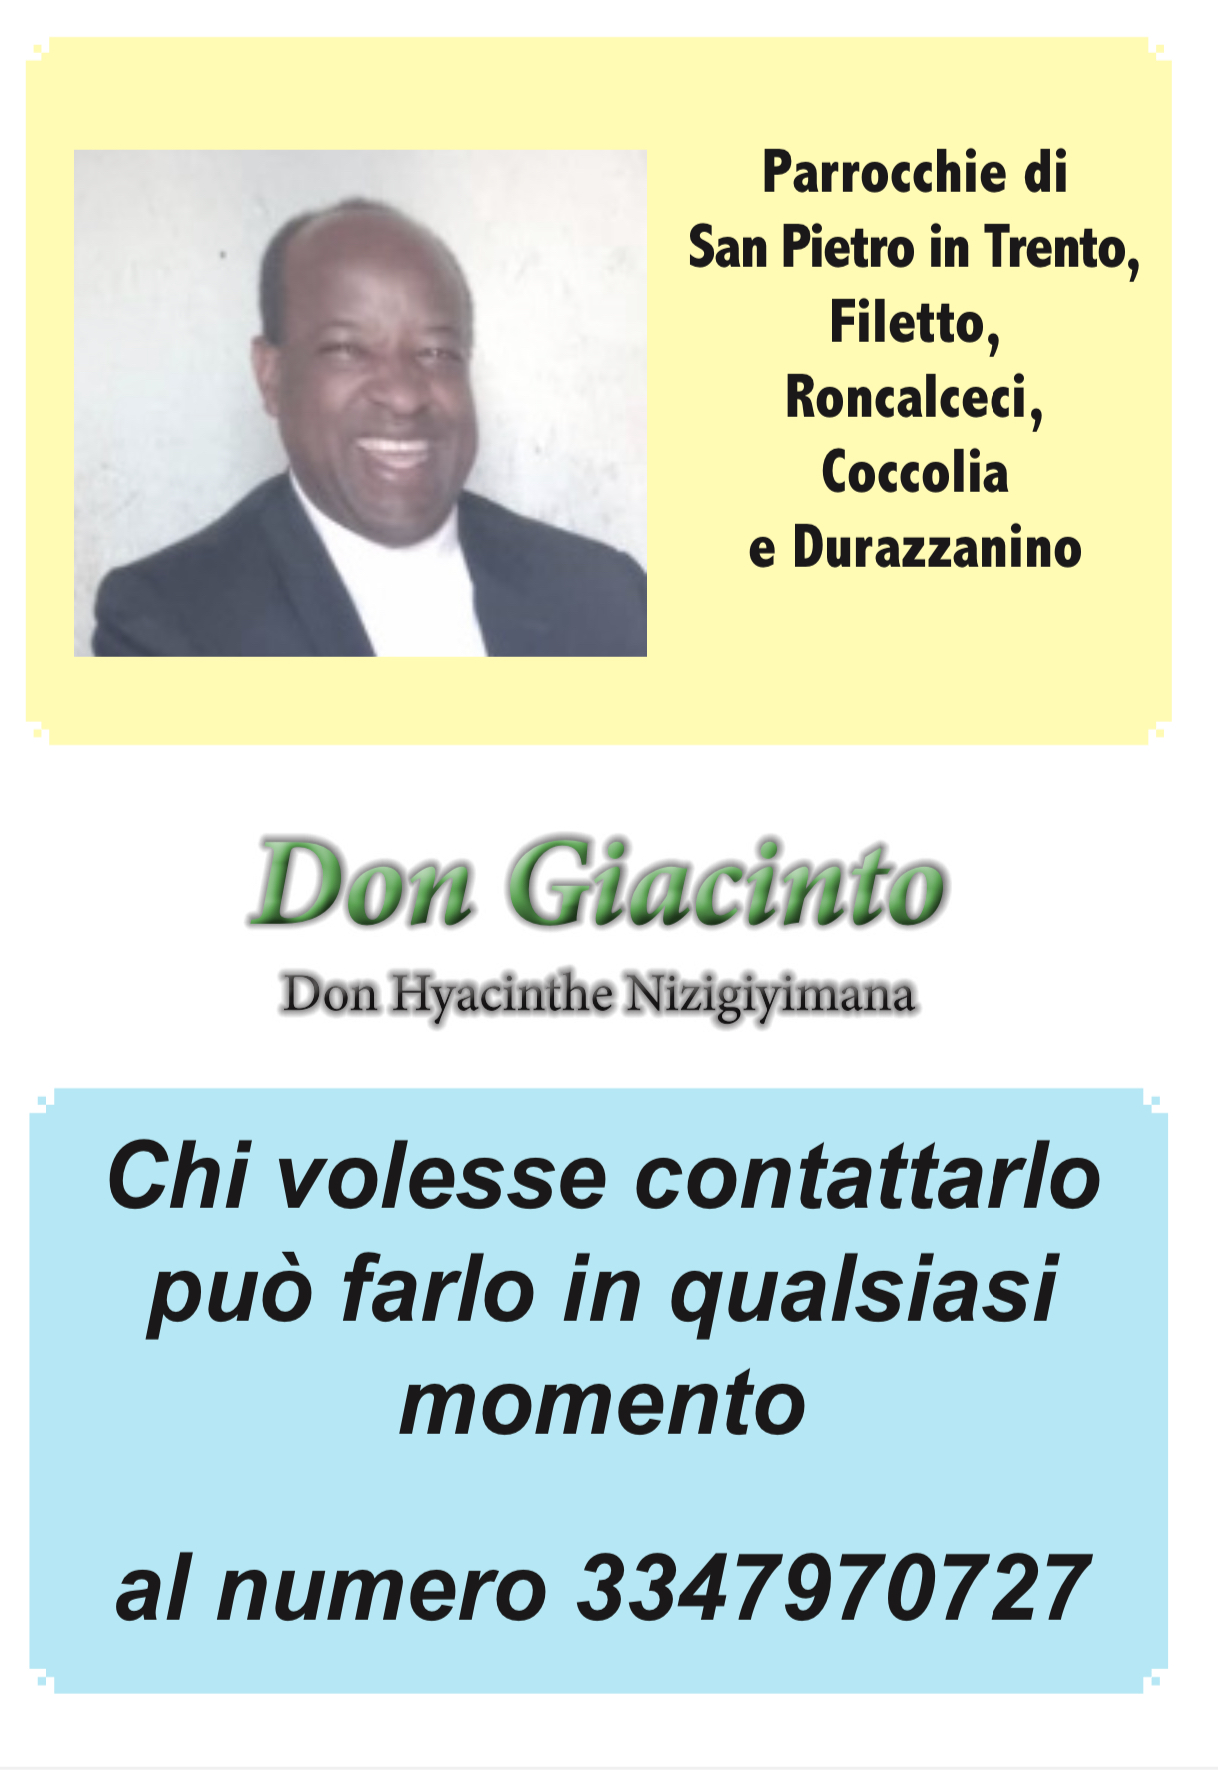 DON GIACINTO